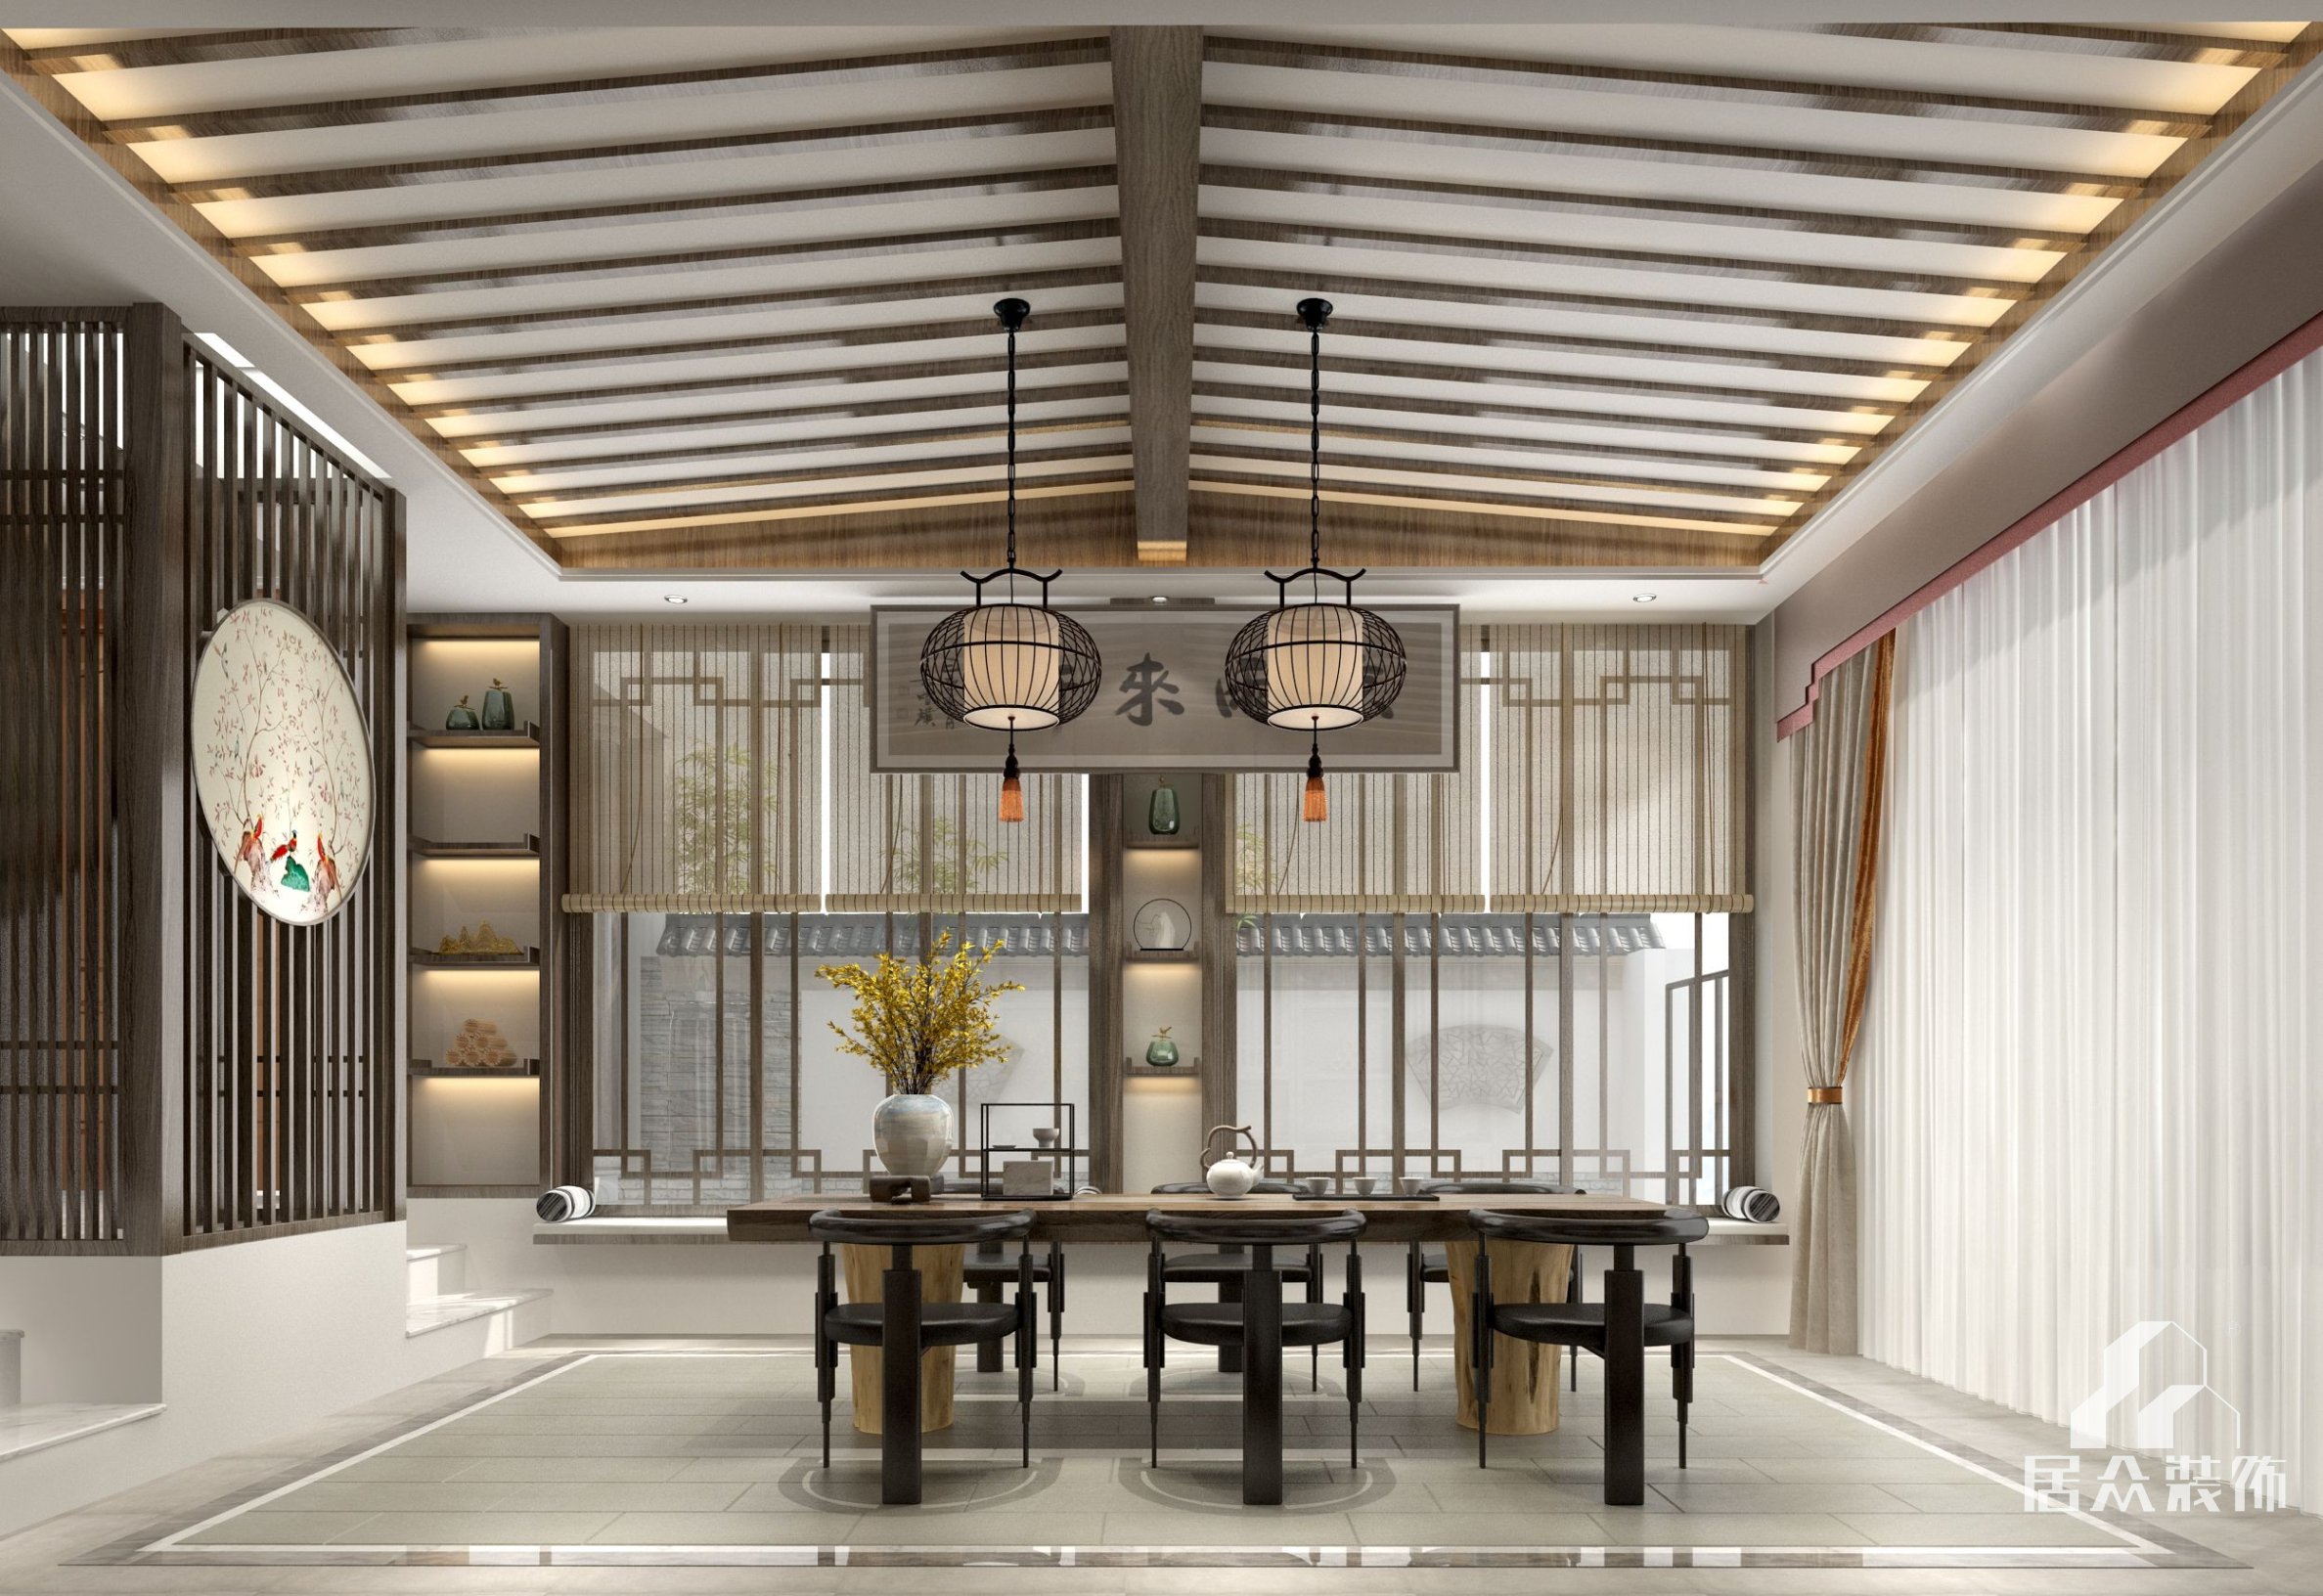 萬科棠樾600平方米中式風格別墅裝修效果圖